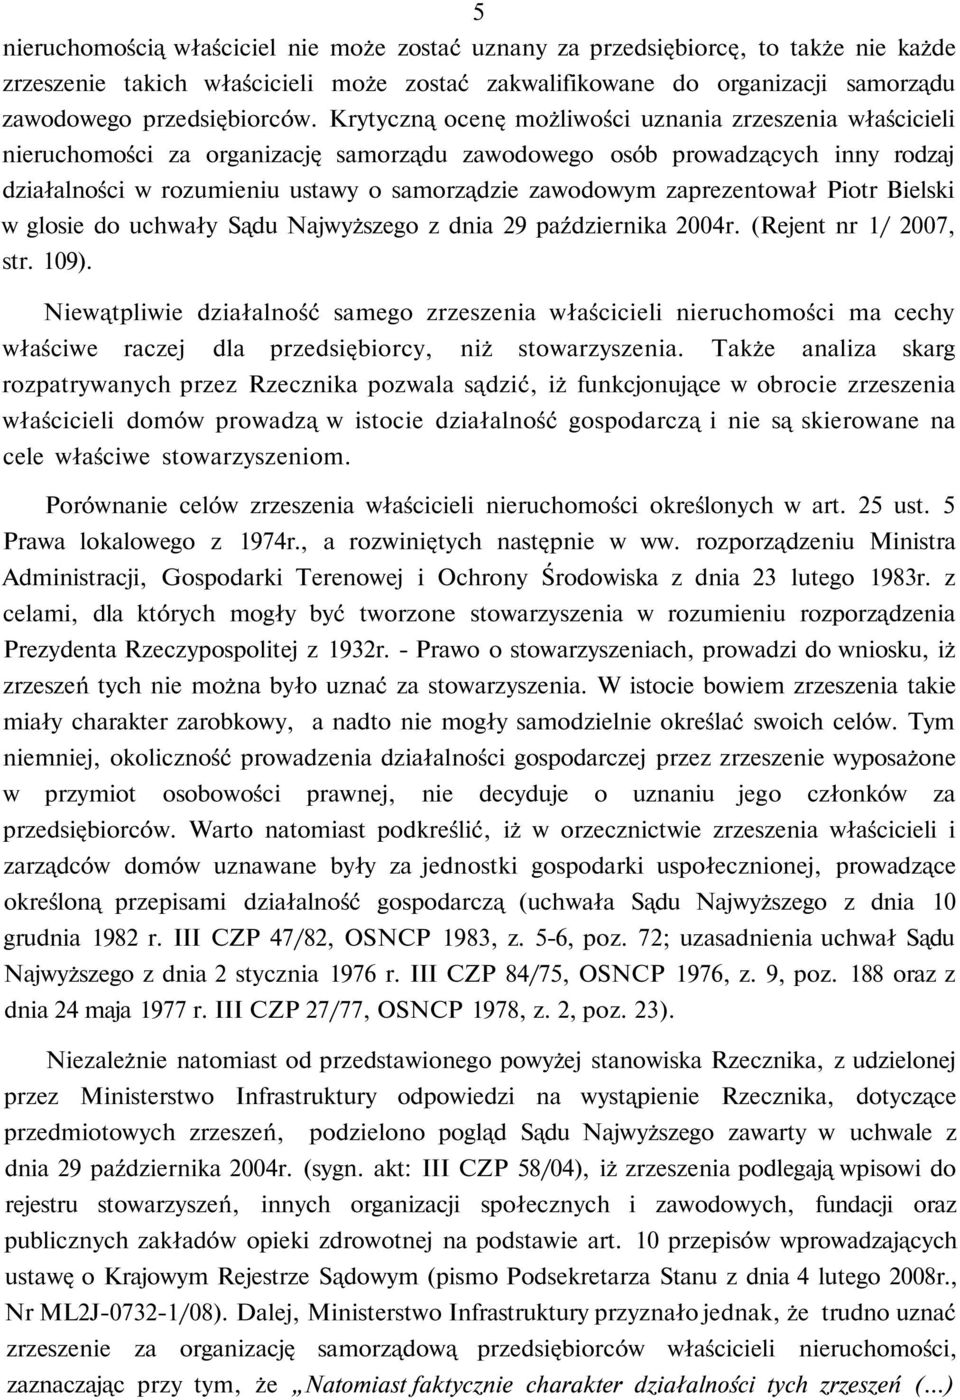 zaprezentował Piotr Bielski w glosie do uchwały Sądu Najwyższego z dnia 29 października 2004r. (Rejent nr 1/ 2007, str. 109).